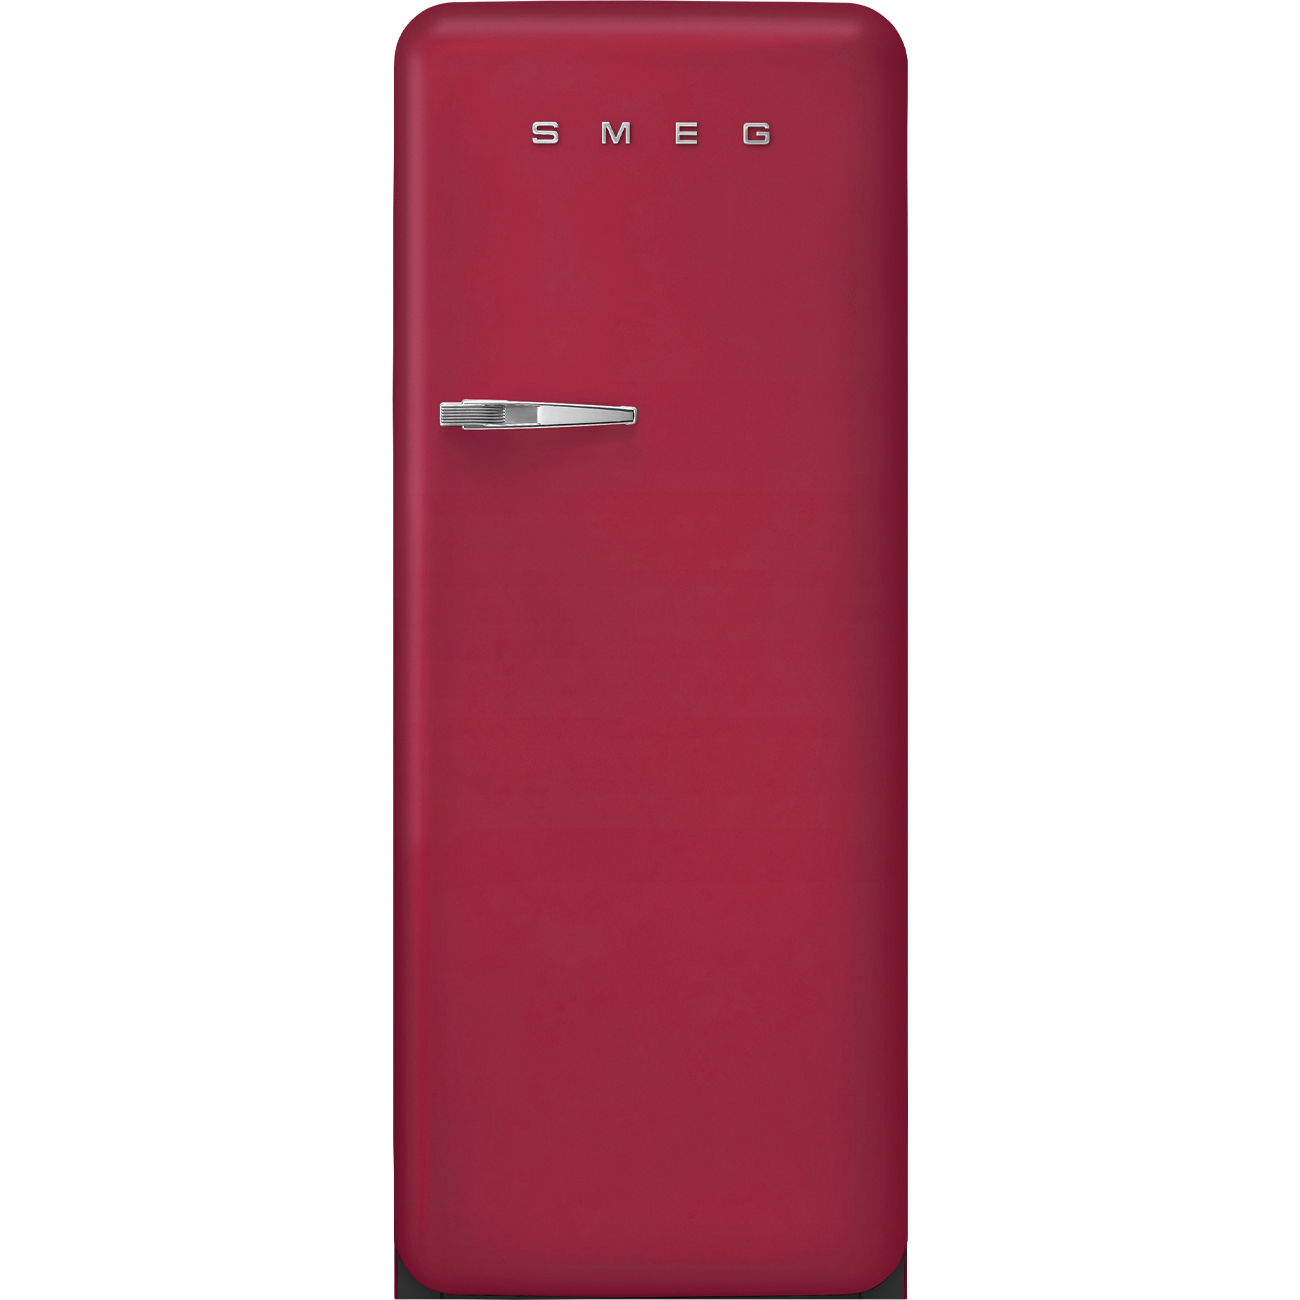 Ruby Red koelkast - Smeg_1